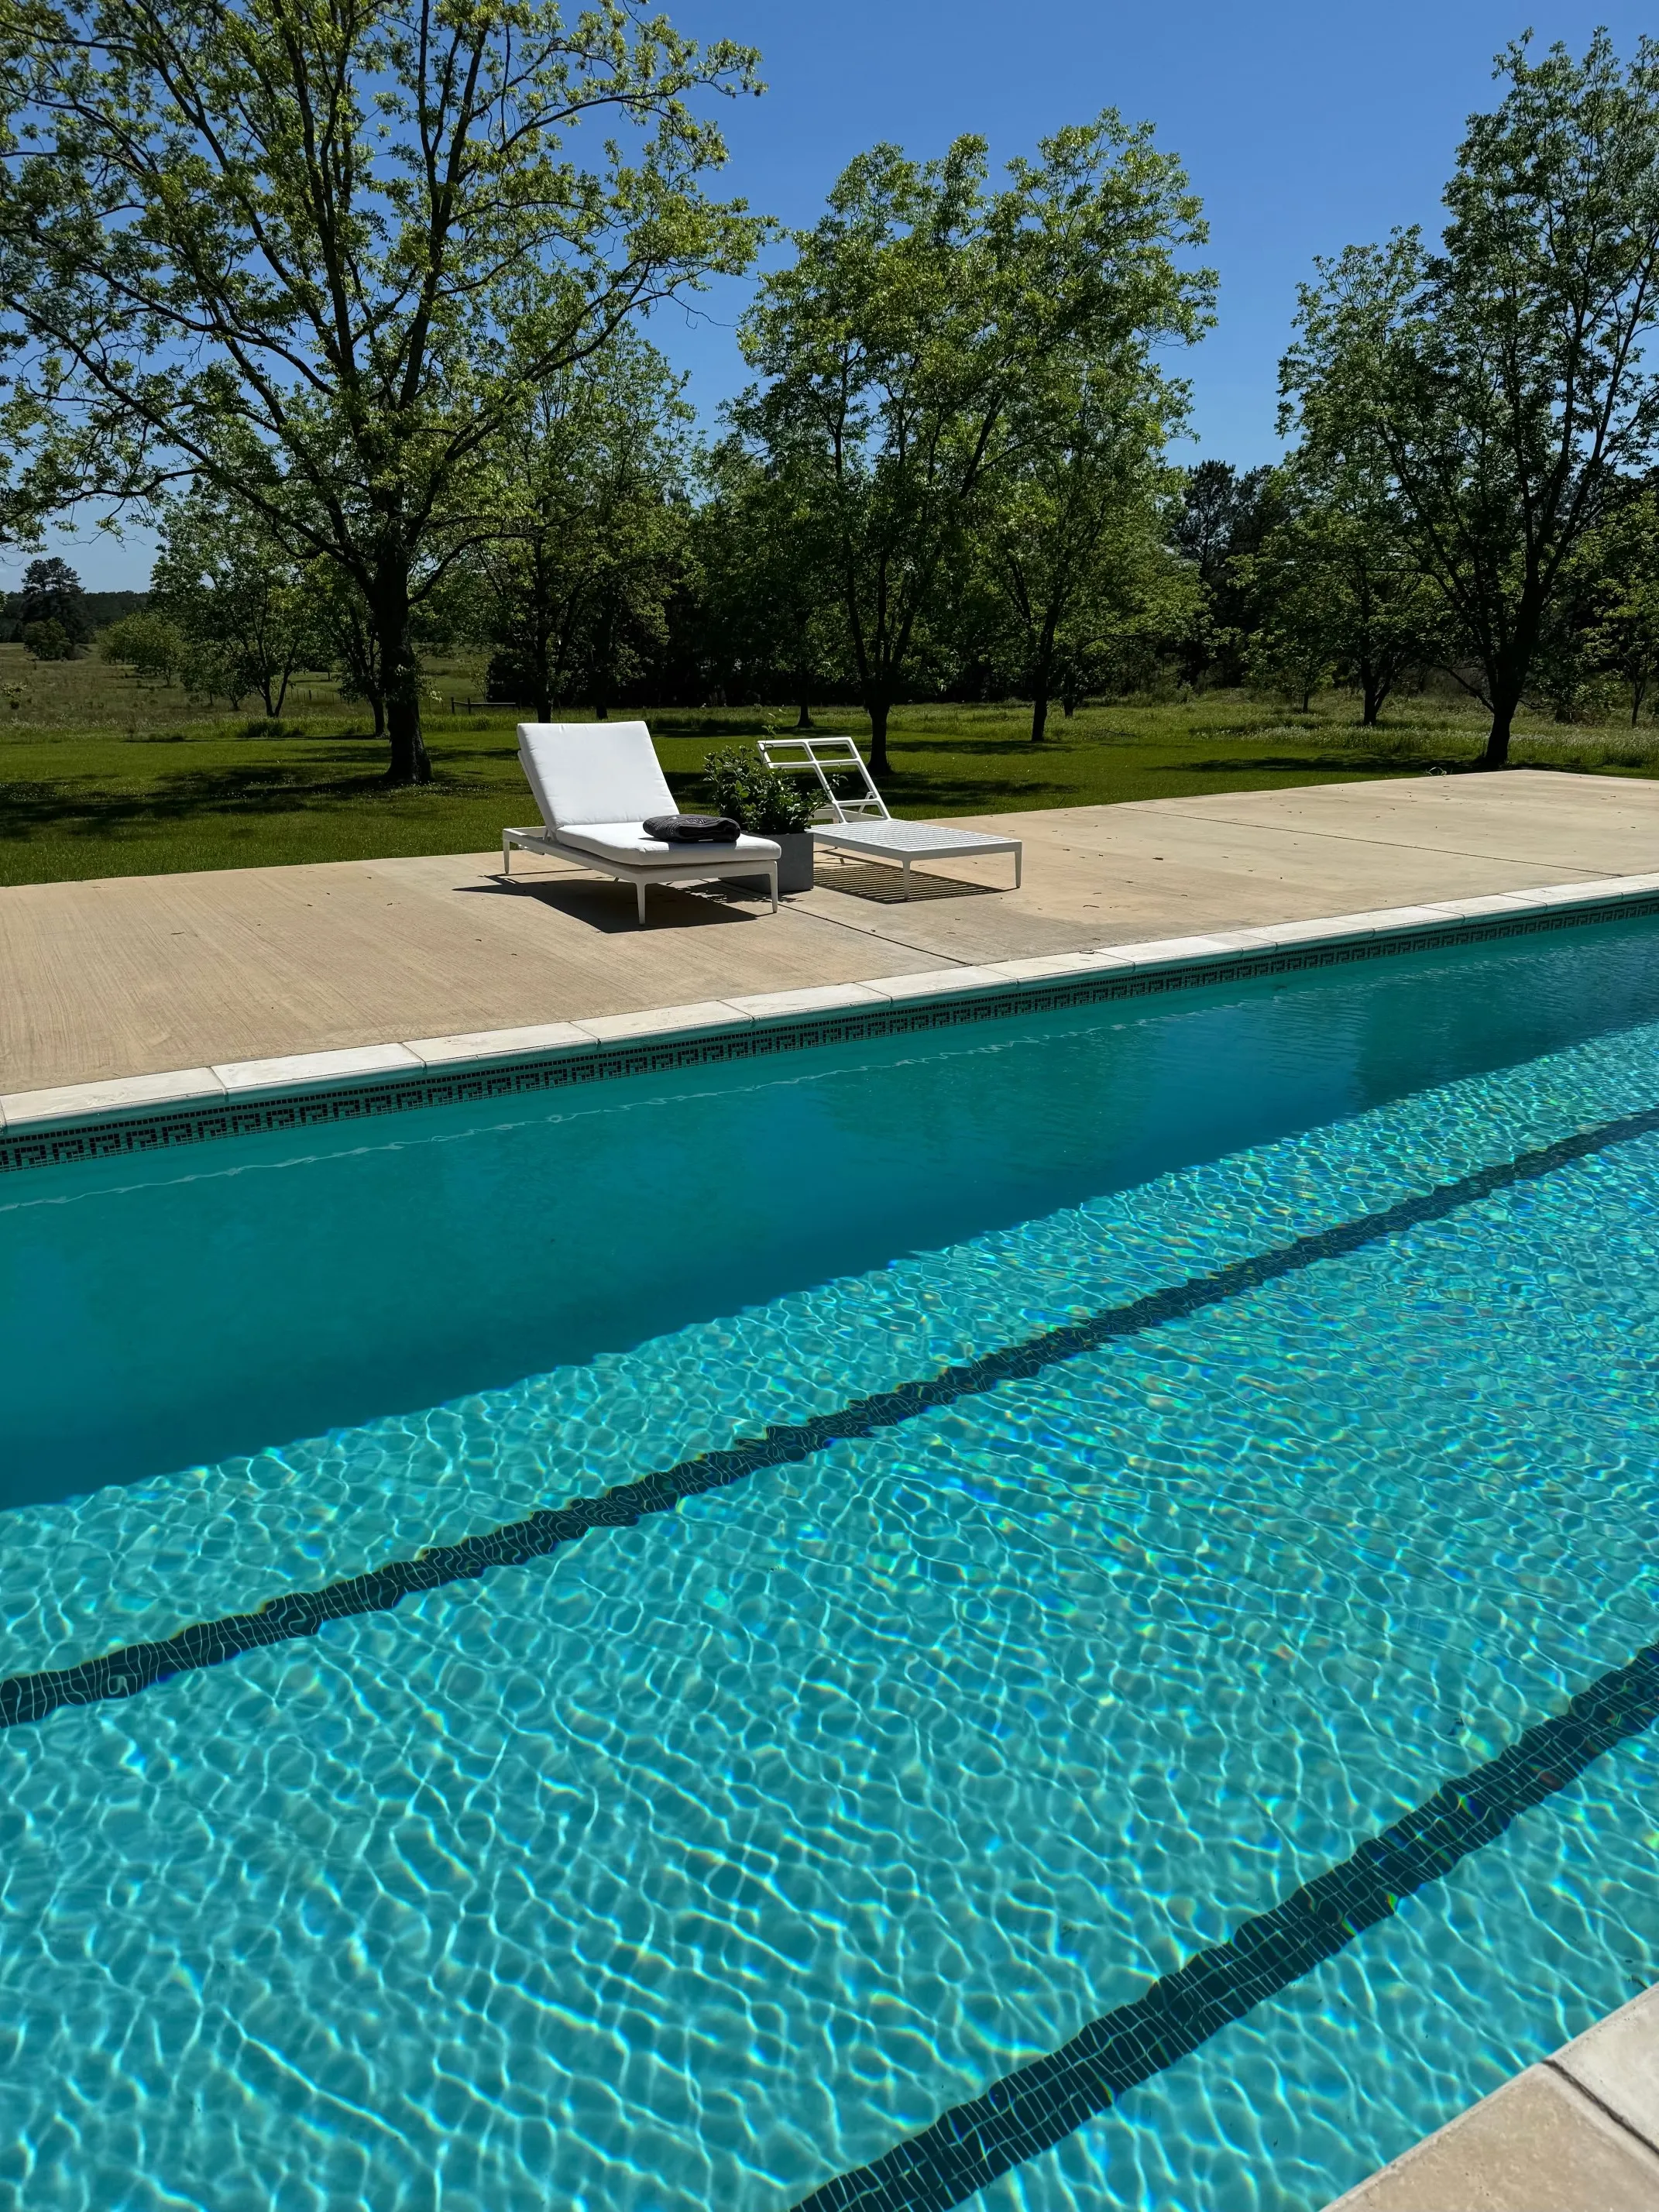 a clean pool